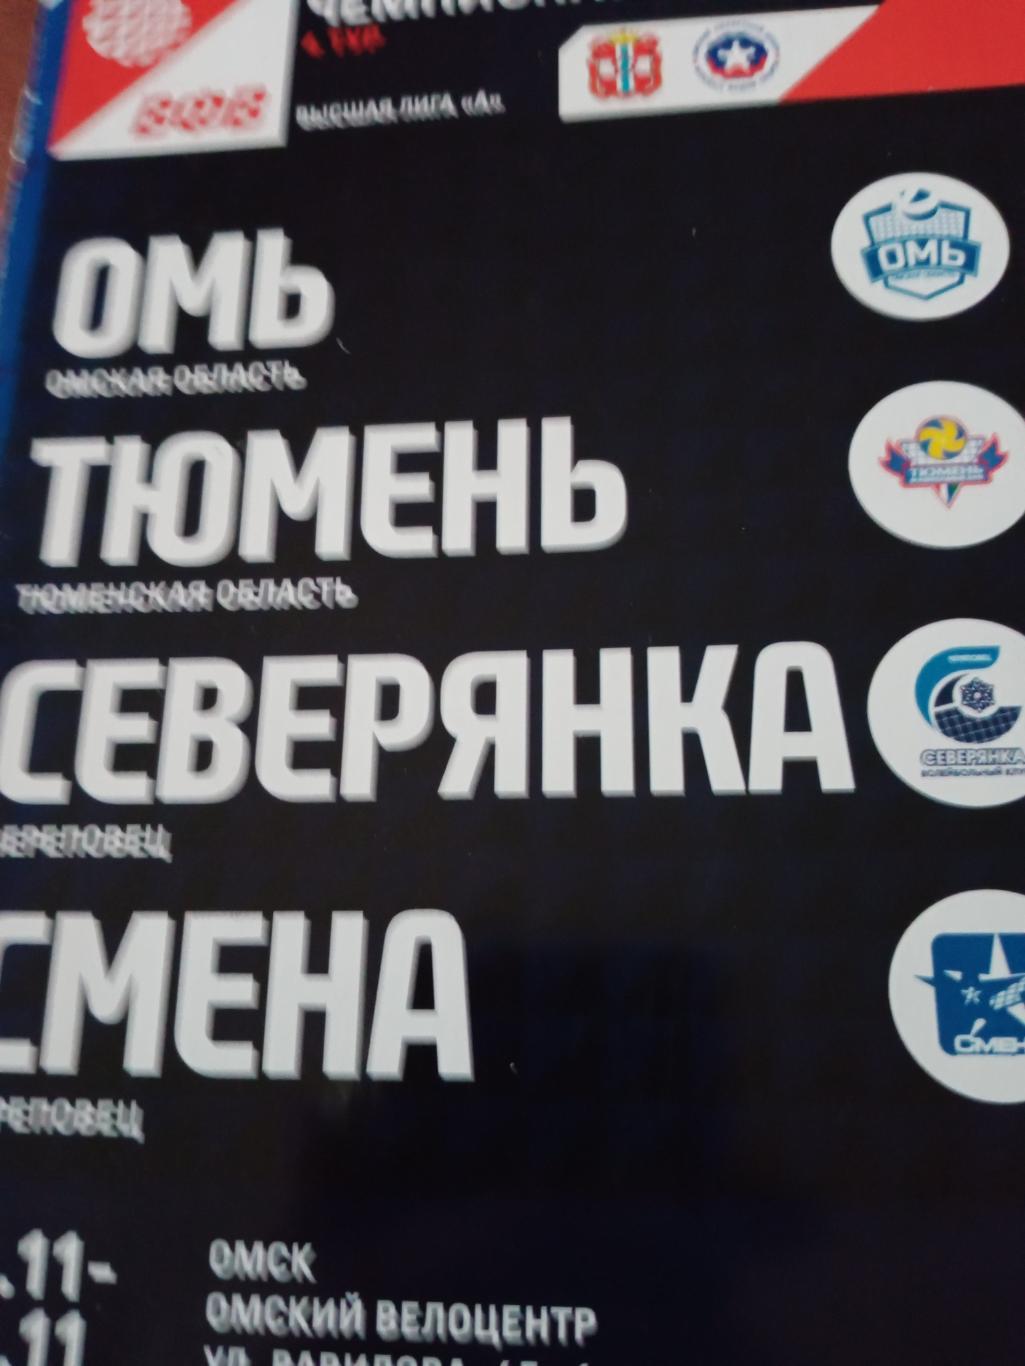 Высшая лига А. Тур в Омске. 11 - 14.11.2021